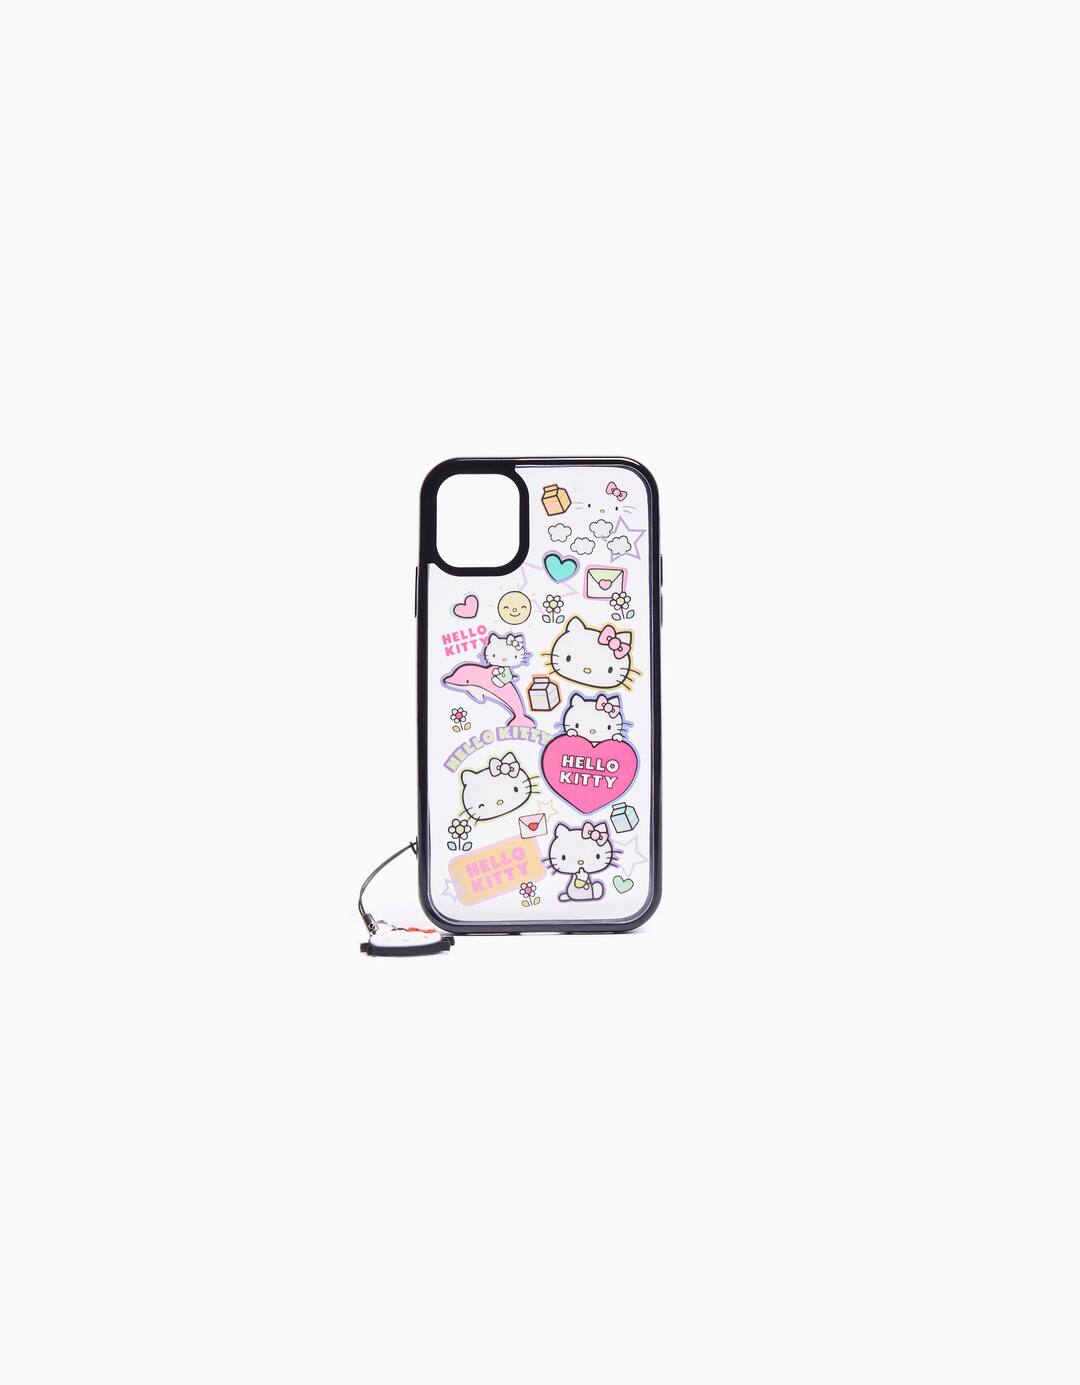 Carcasa móvil Hello Kitty iPhone charm